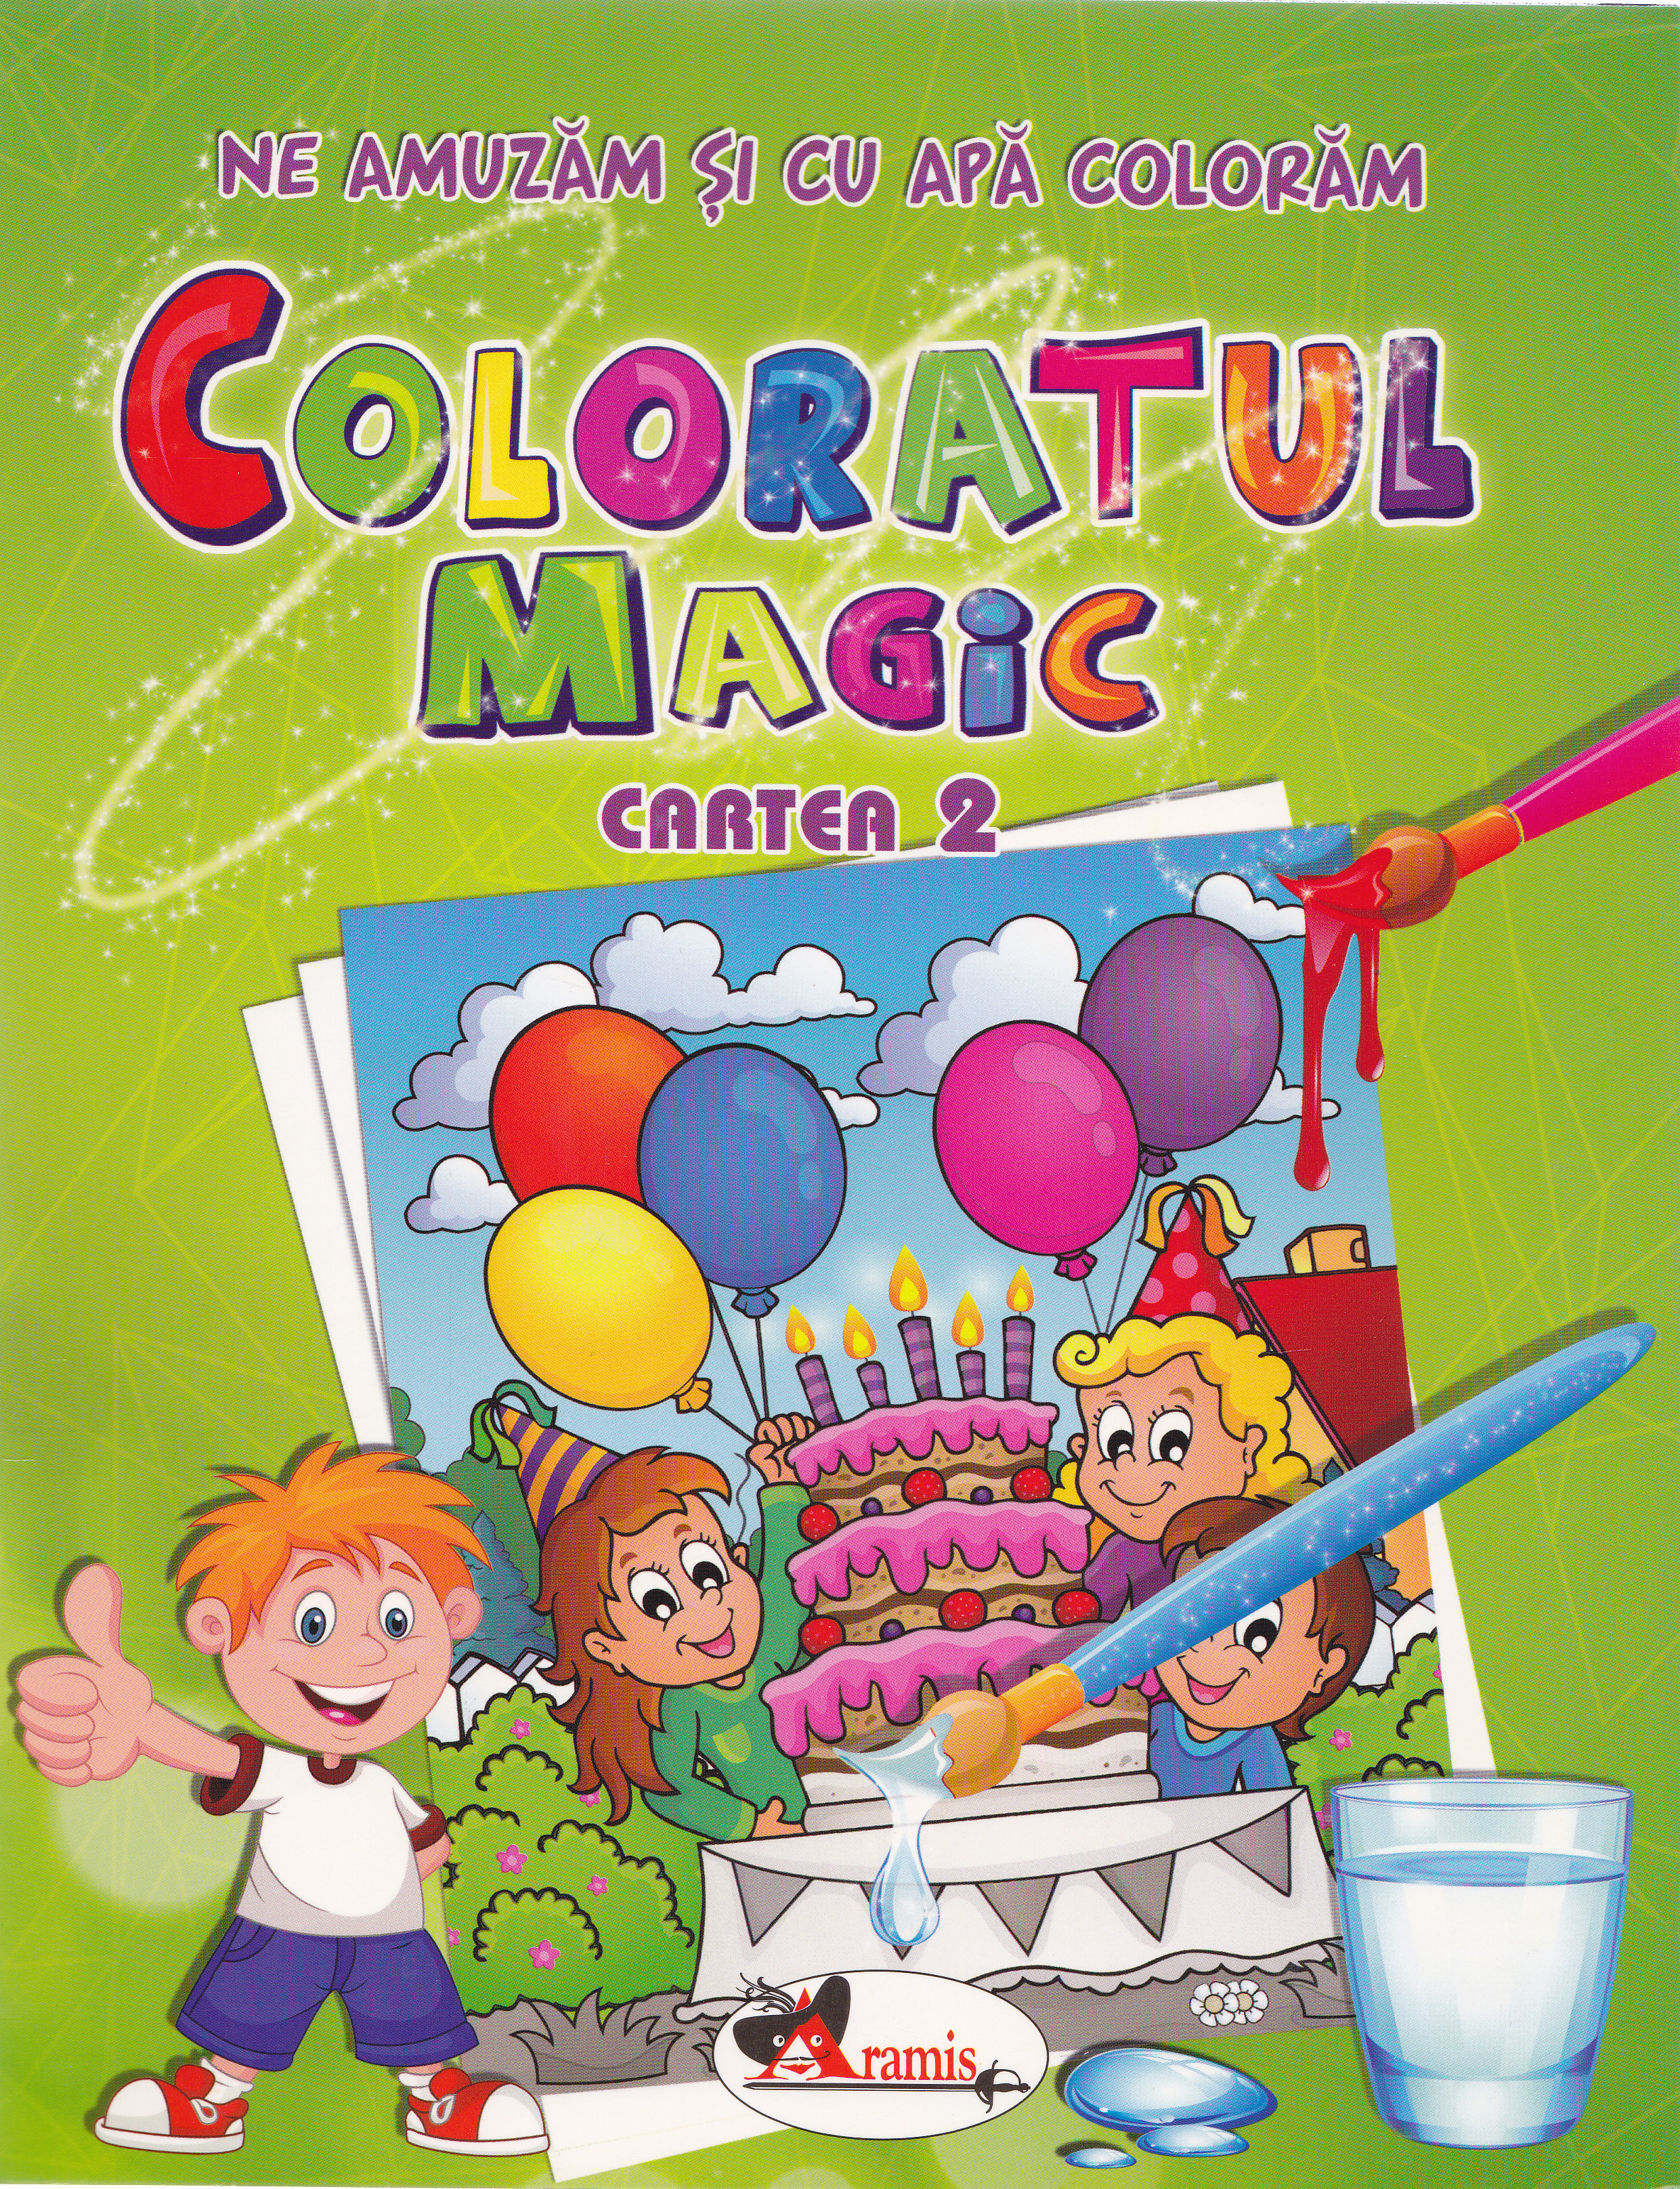 Coloratul magic cartea 2 - Ne amuzam si cu apa coloram